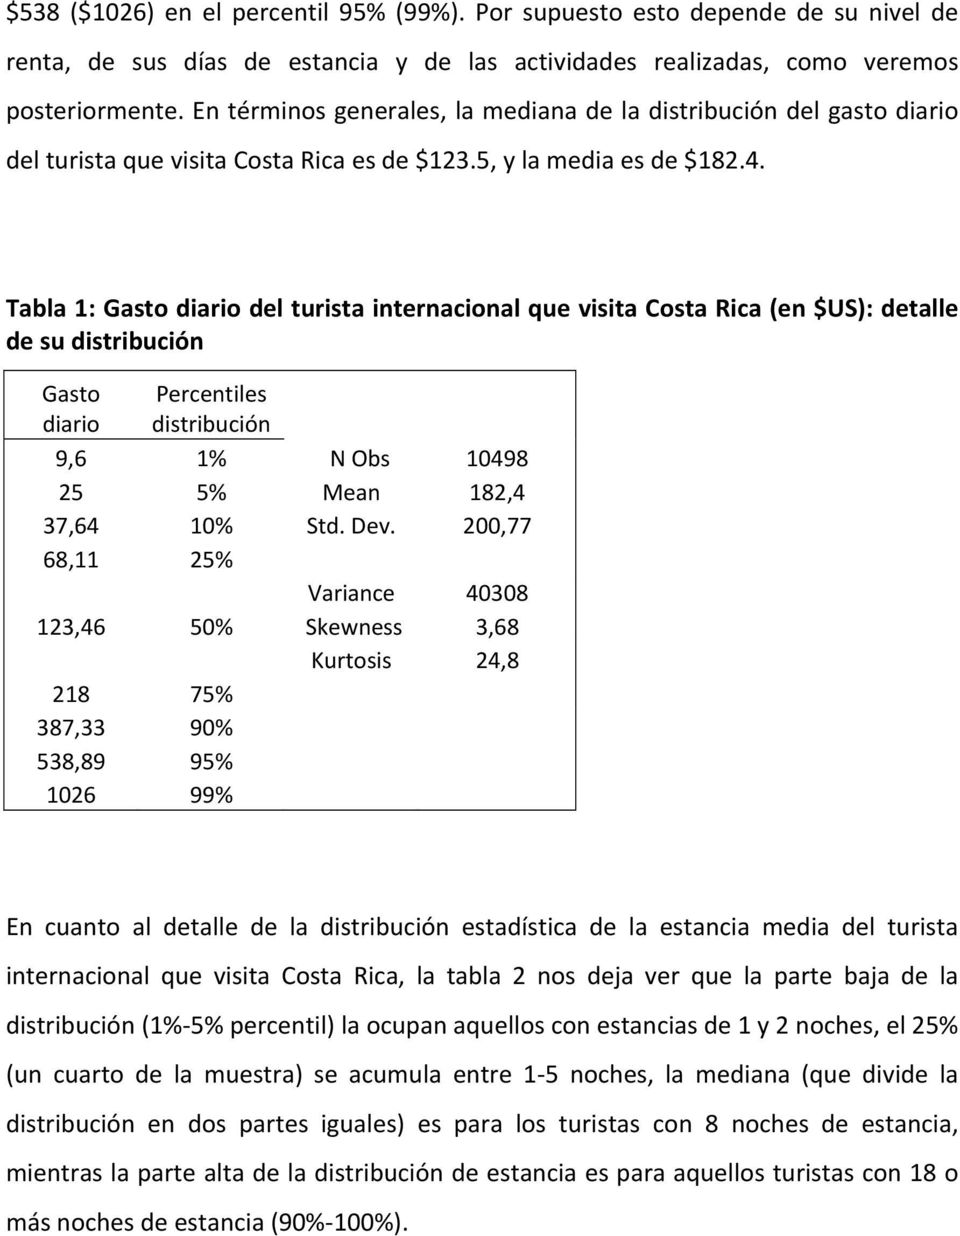 Tabla 1: Gasto diario del turista internacional que visita Costa Rica (en $US): detalle de su distribución Gasto diario Percentiles distribución 9,6 1% N Obs 10498 25 5% Mean 182,4 37,64 10% Std. Dev.